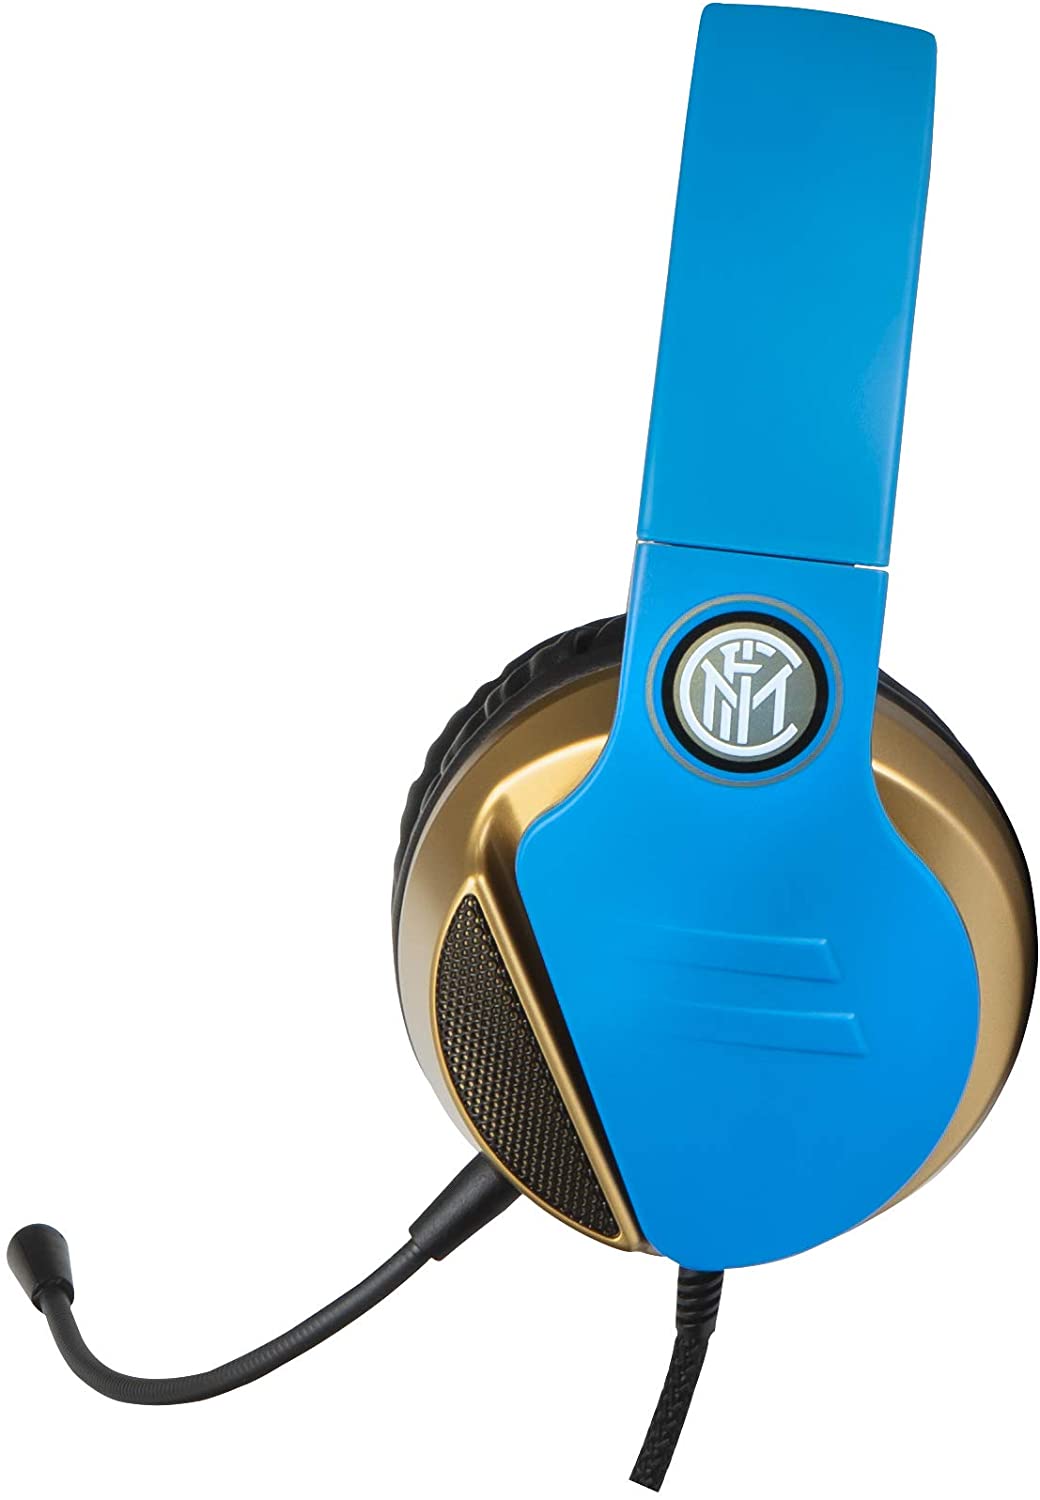 Inter Mailand Kabelgebundenes Gaming-Headset/Headset (PS4////)